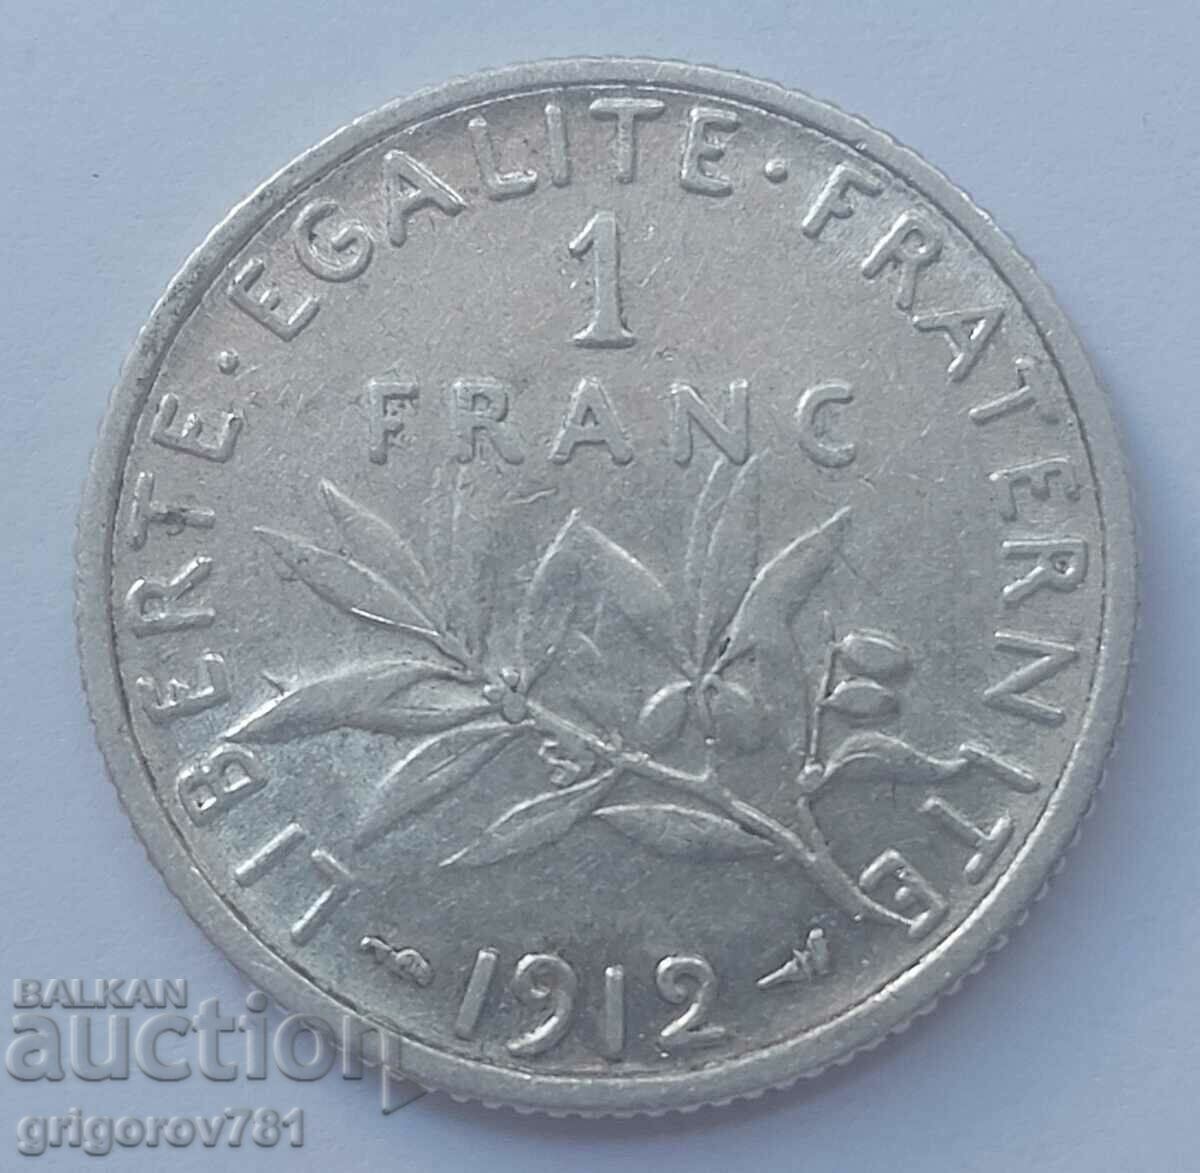 1 franc argint Franța 1912 - monedă de argint №1